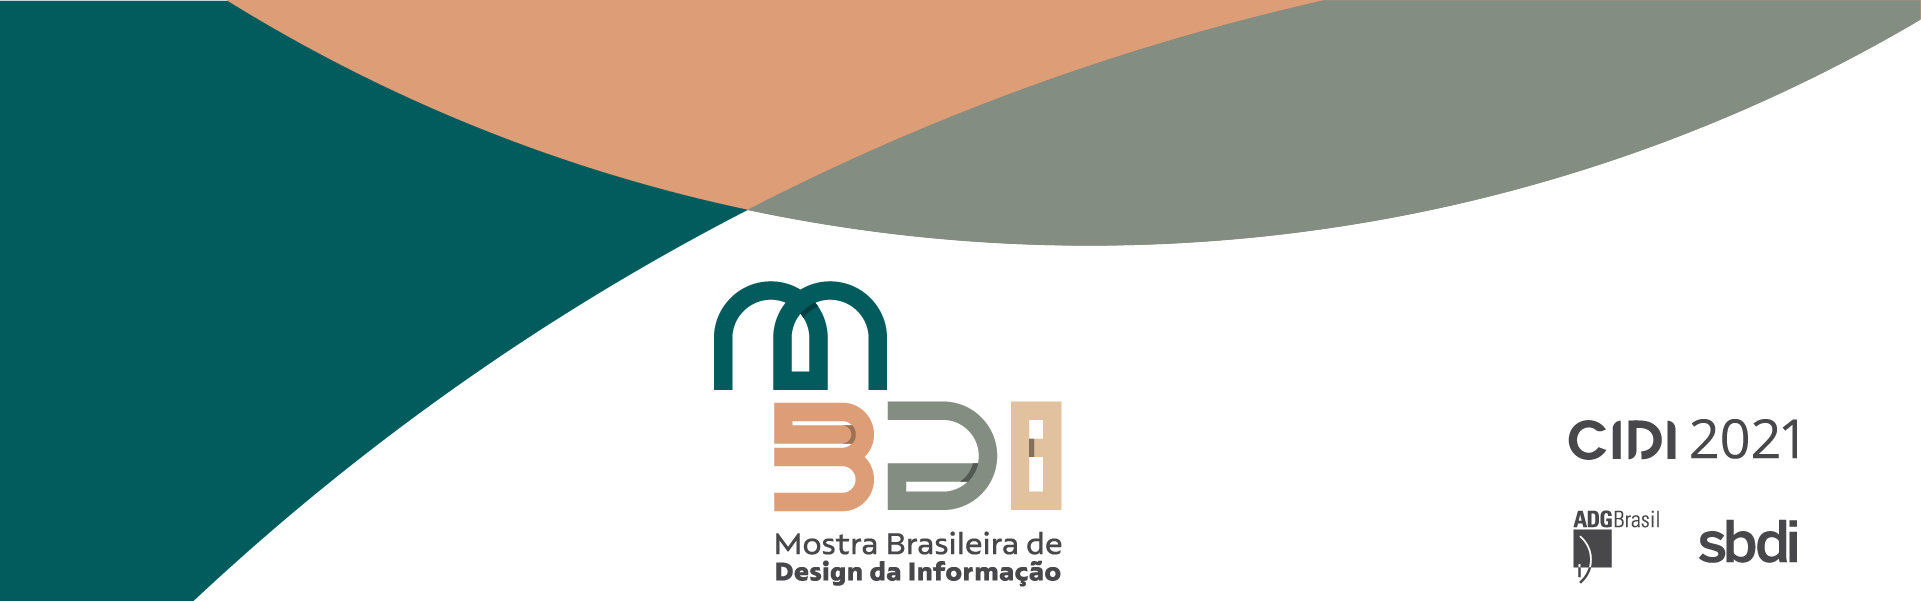 Mostra Brasileira de Design da Informação